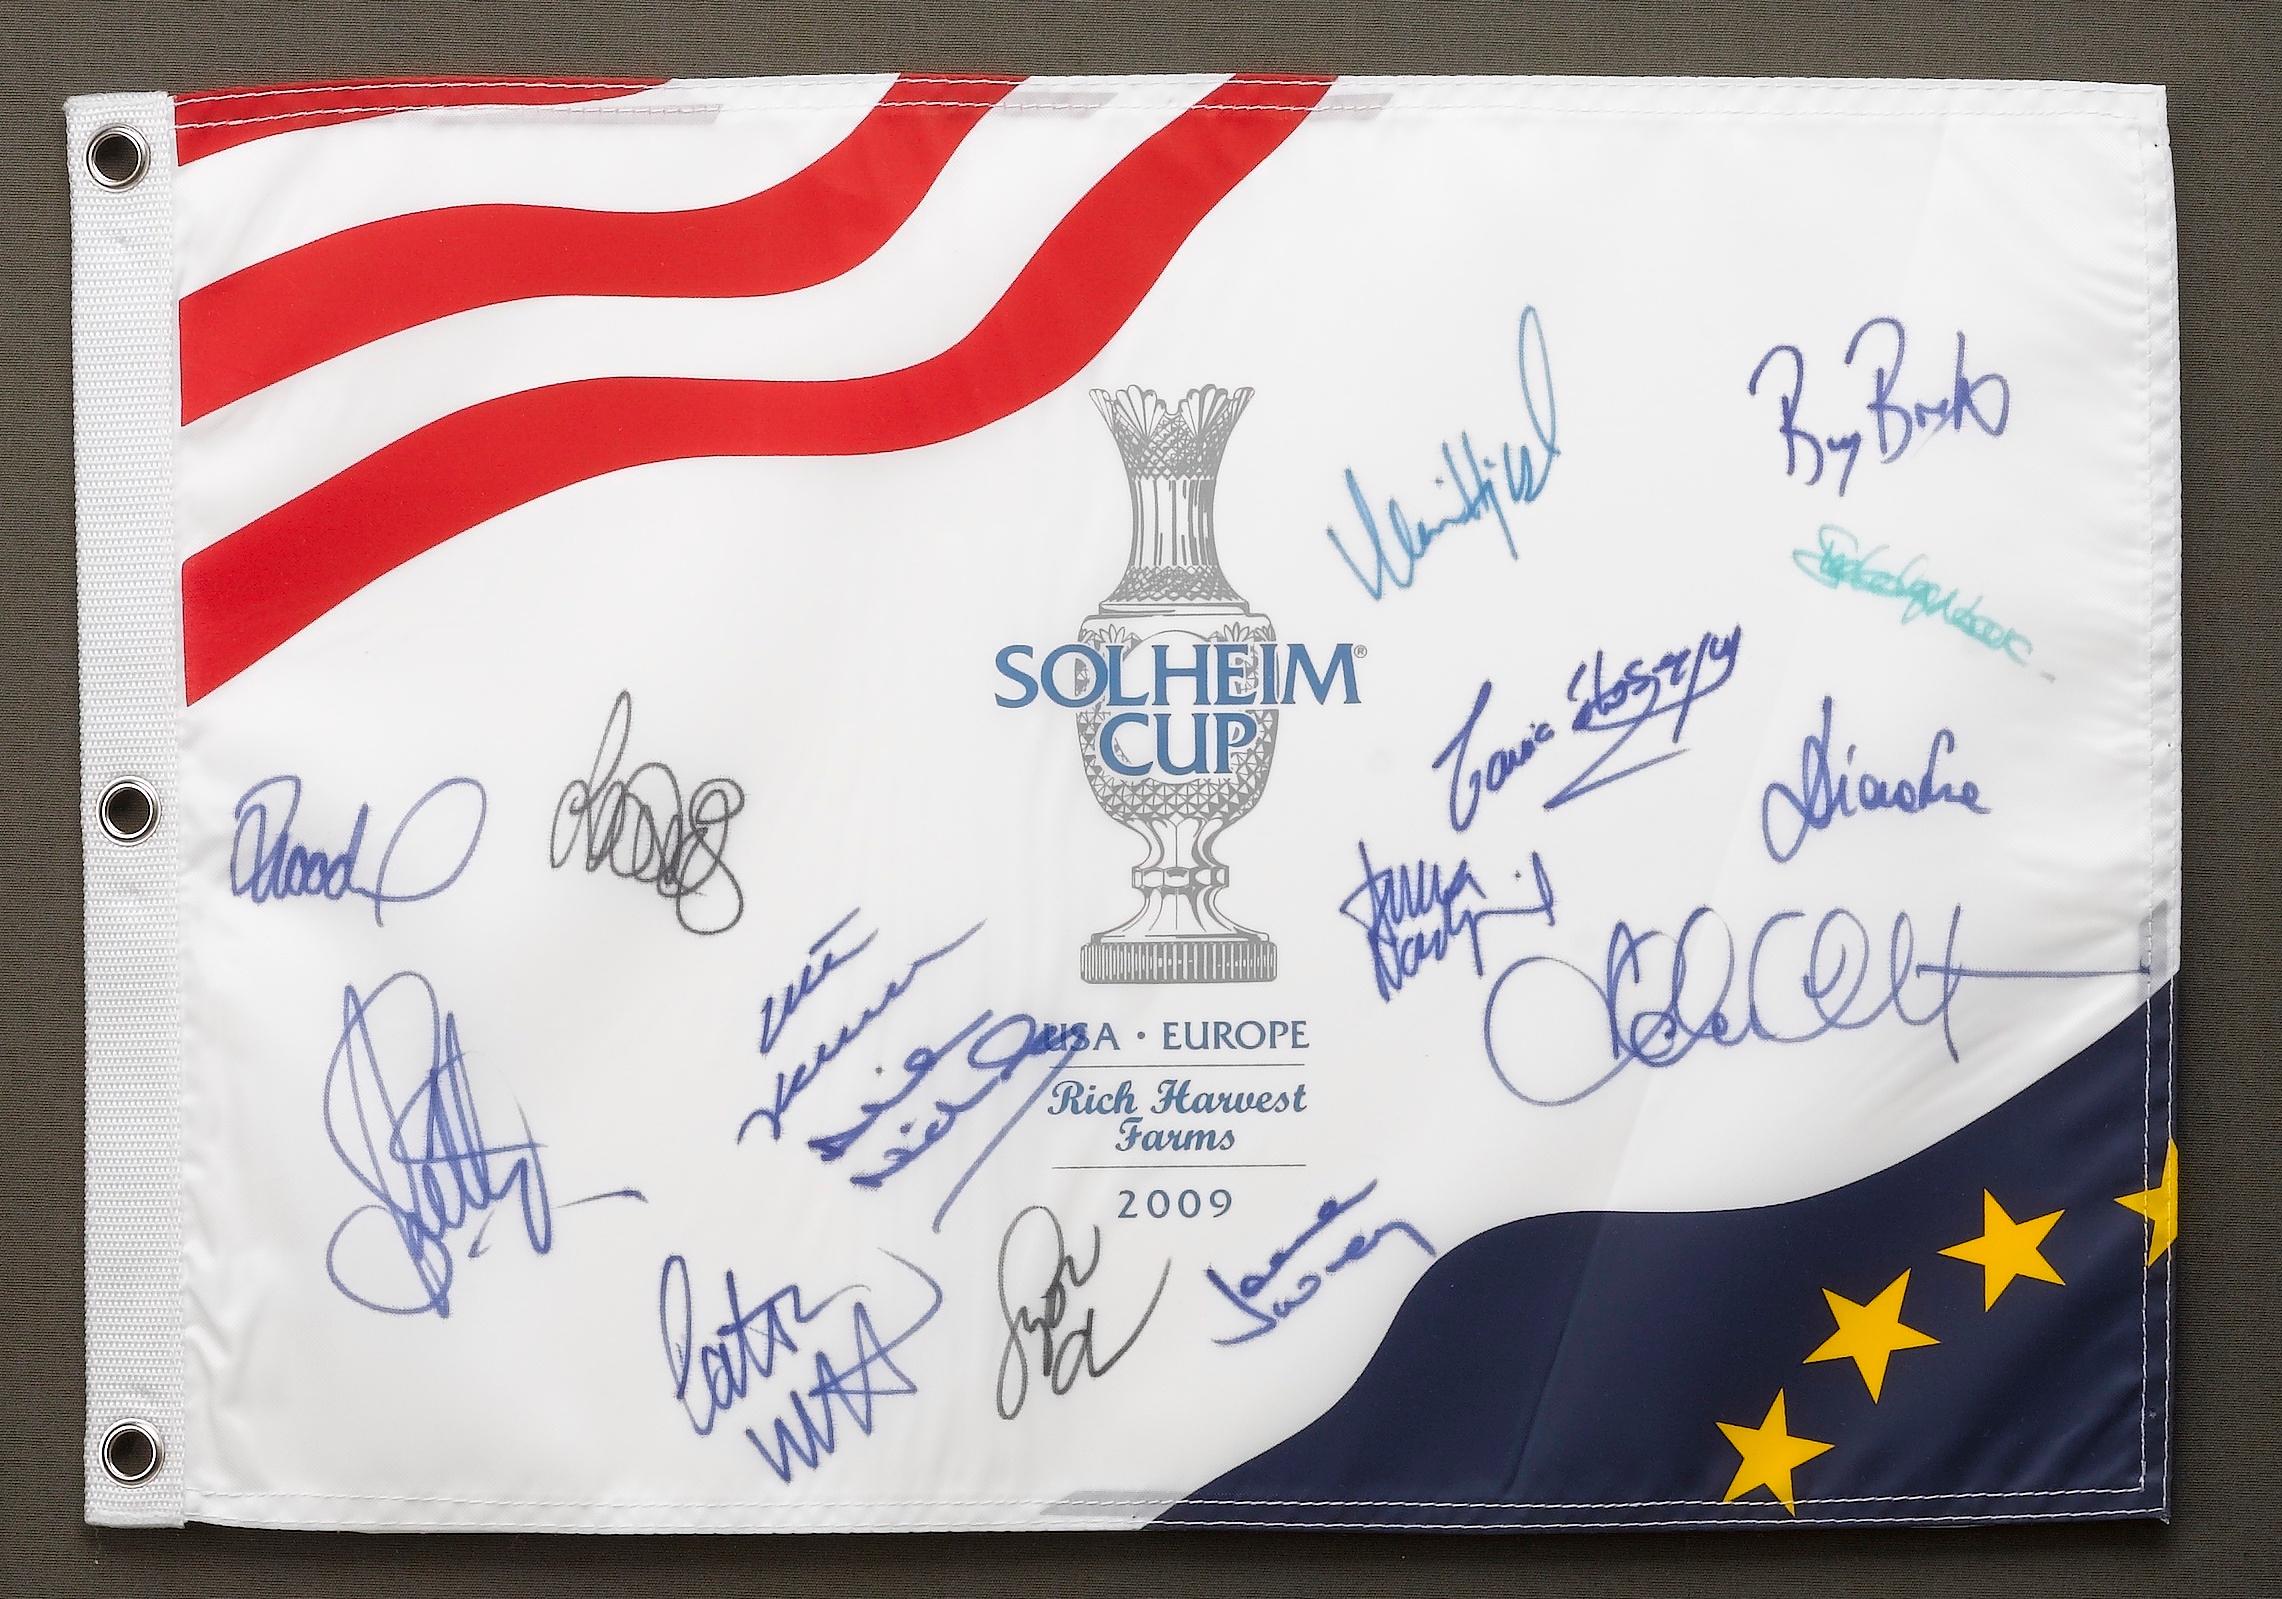 Américain Photo et drapeau des matchs de la Coupe de Solheim signés par l'équipe américaine et européenne, 2009 en vente